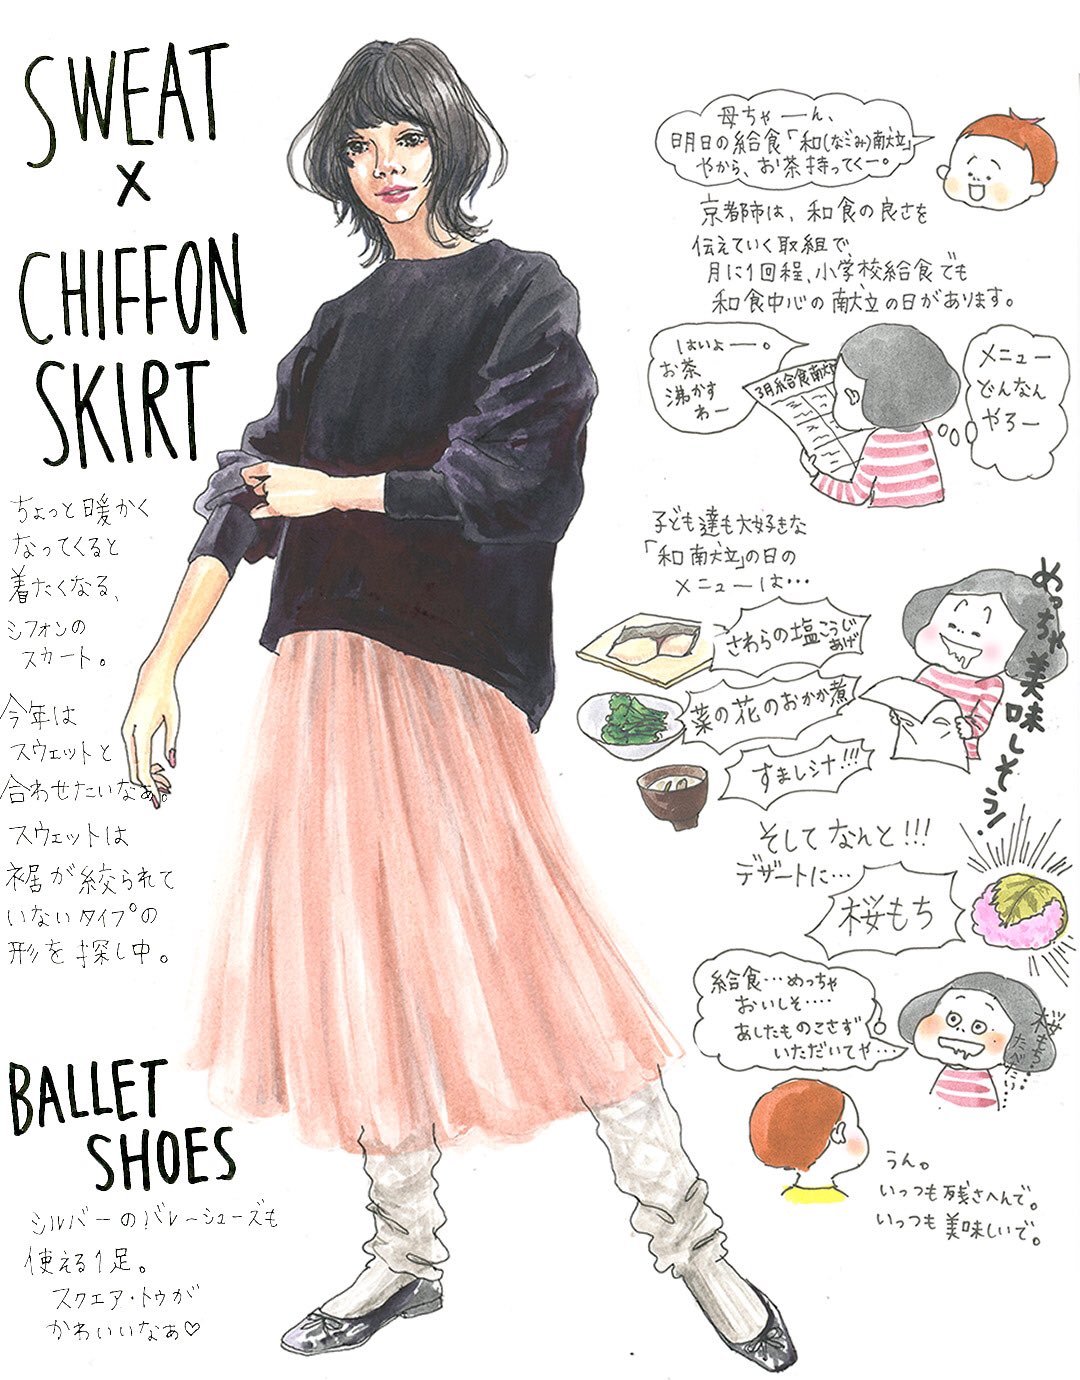 Oookickooo A Twitter 給食がいつも美味しそうで 羨ましい 京都市小学校給食 デザートに桜餅 シフォンスカート スウェット バレーシューズ 春の気分 きょうのコーデ ファッションイラスト かっこいい女子 Illustration Fashion Fashionillustrator